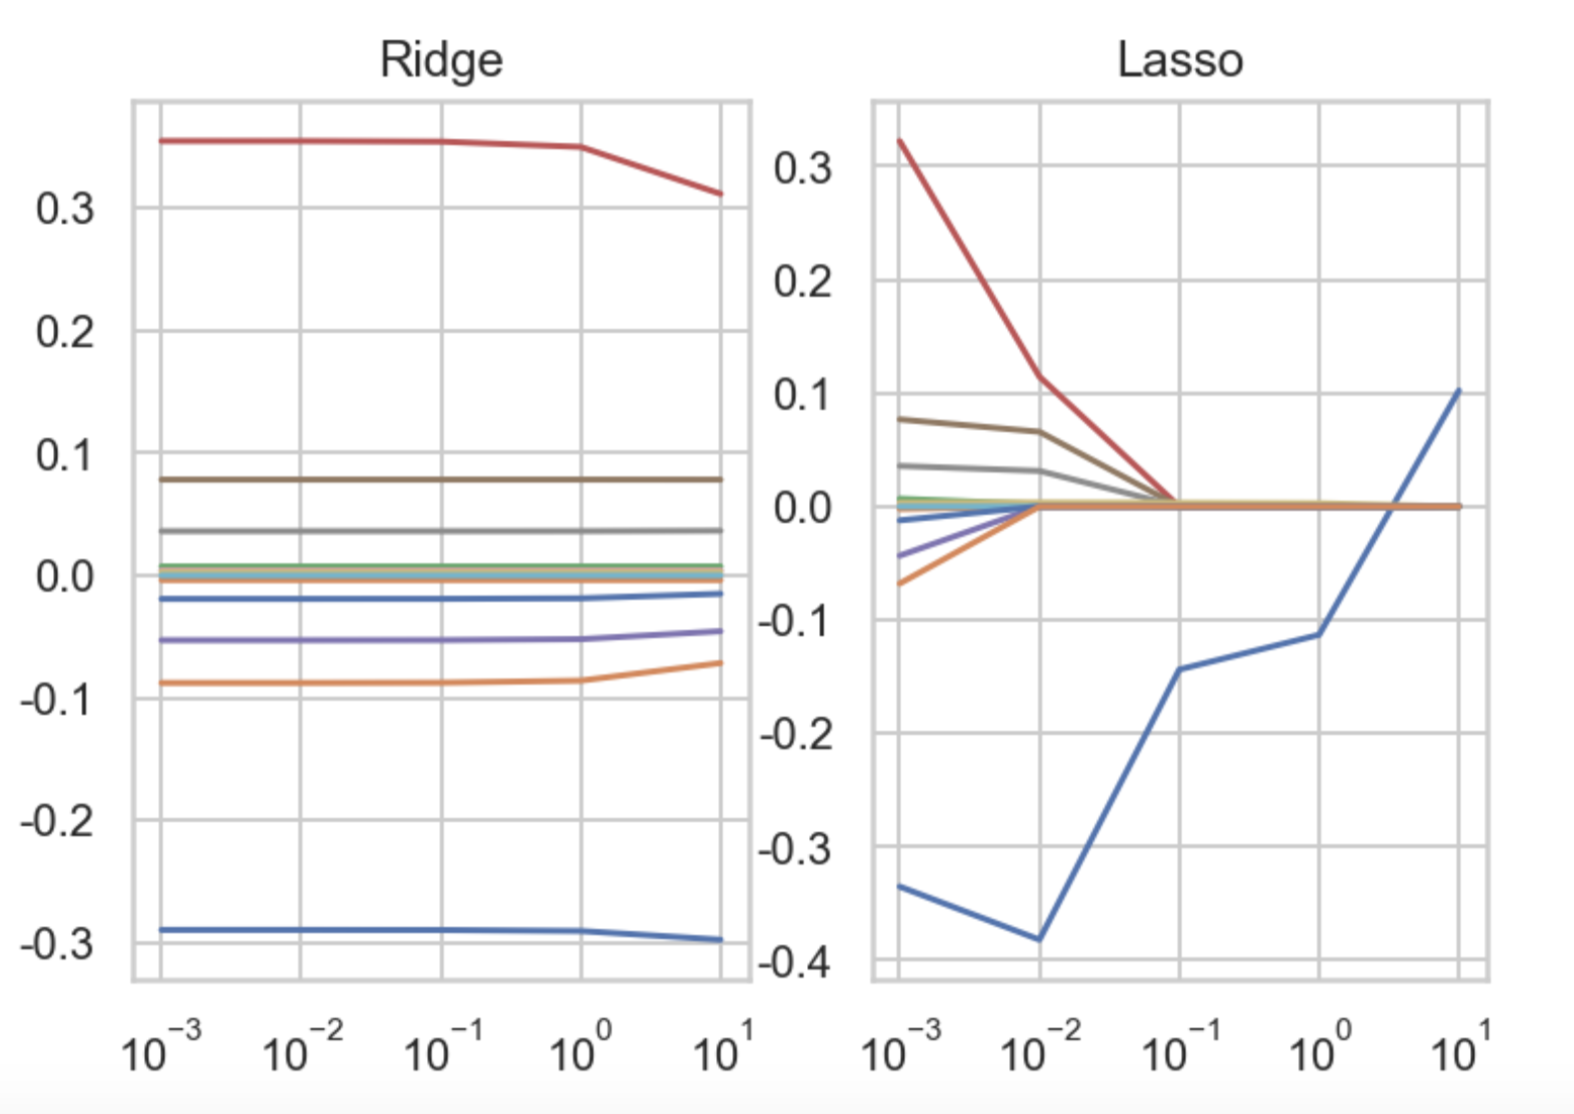 람다값에 따른 Lasso와 Ridge의 변화